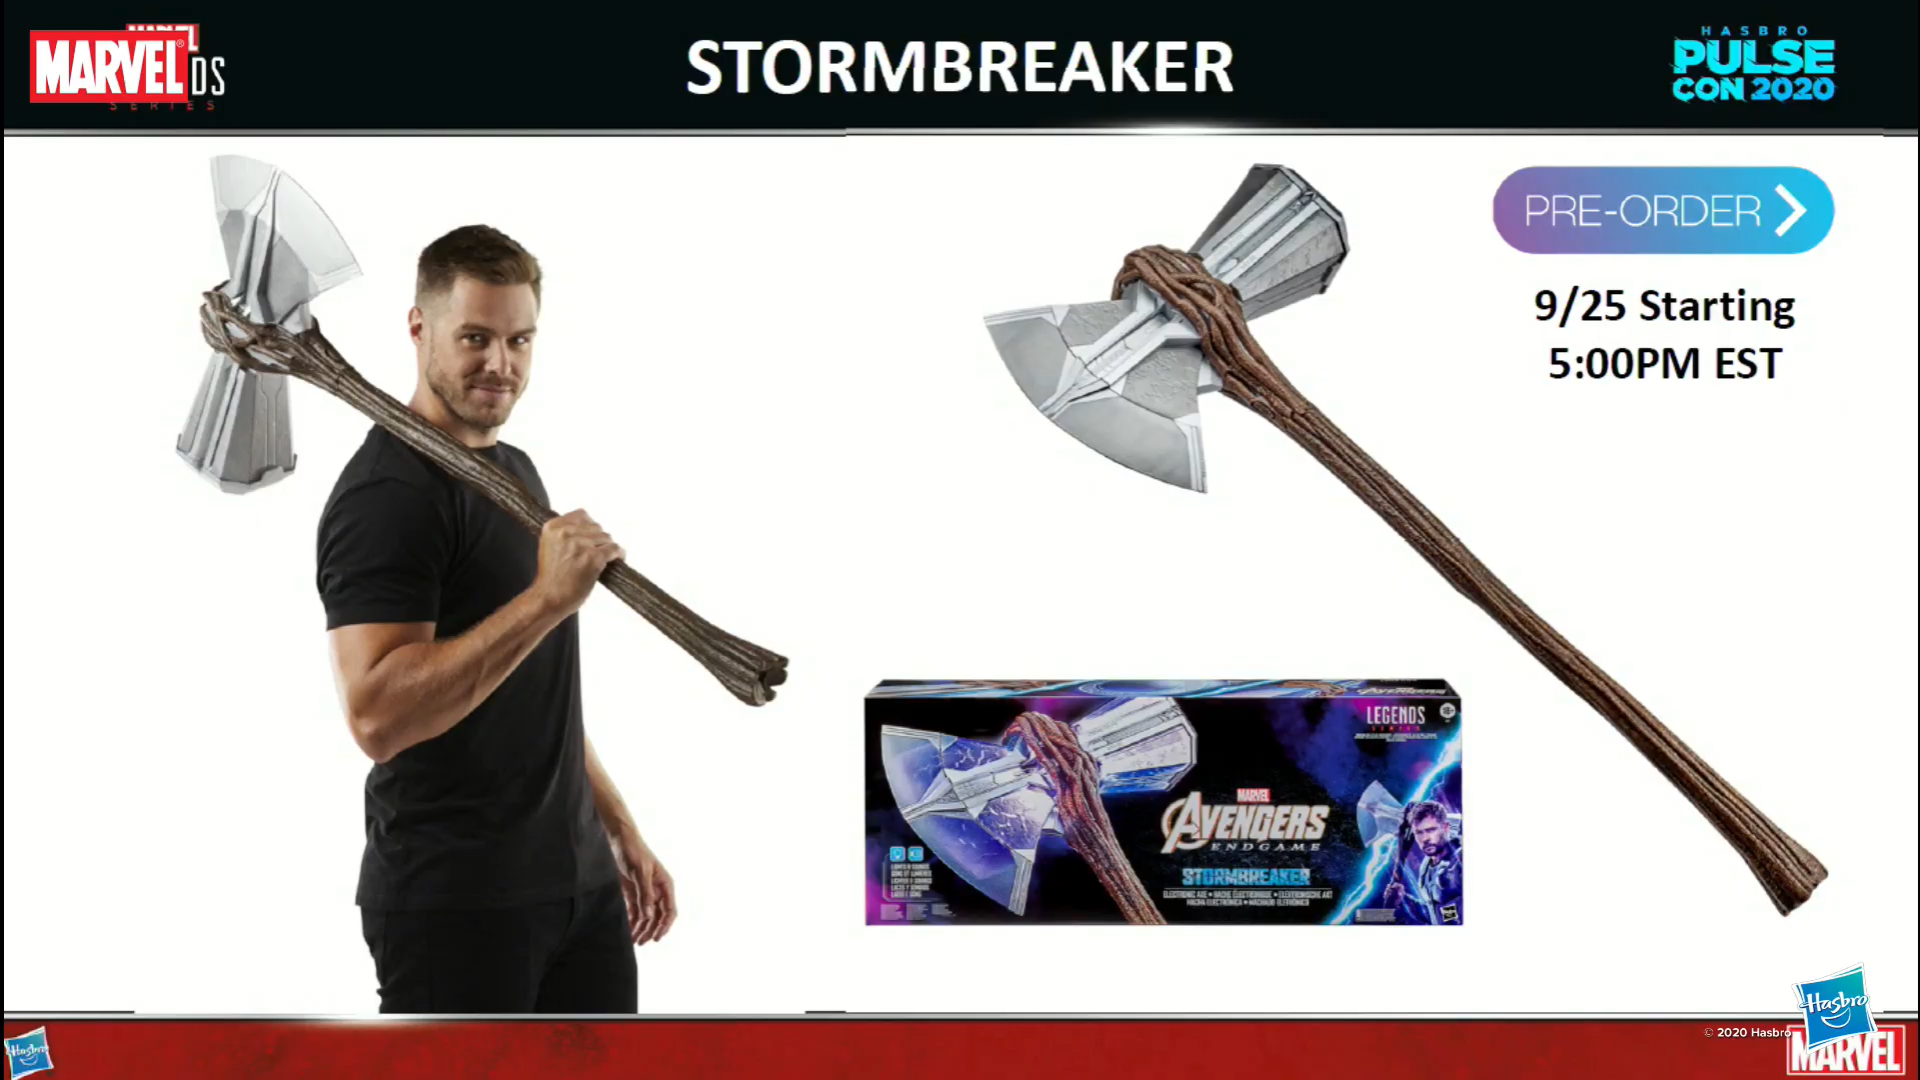 Stormbreaker replica